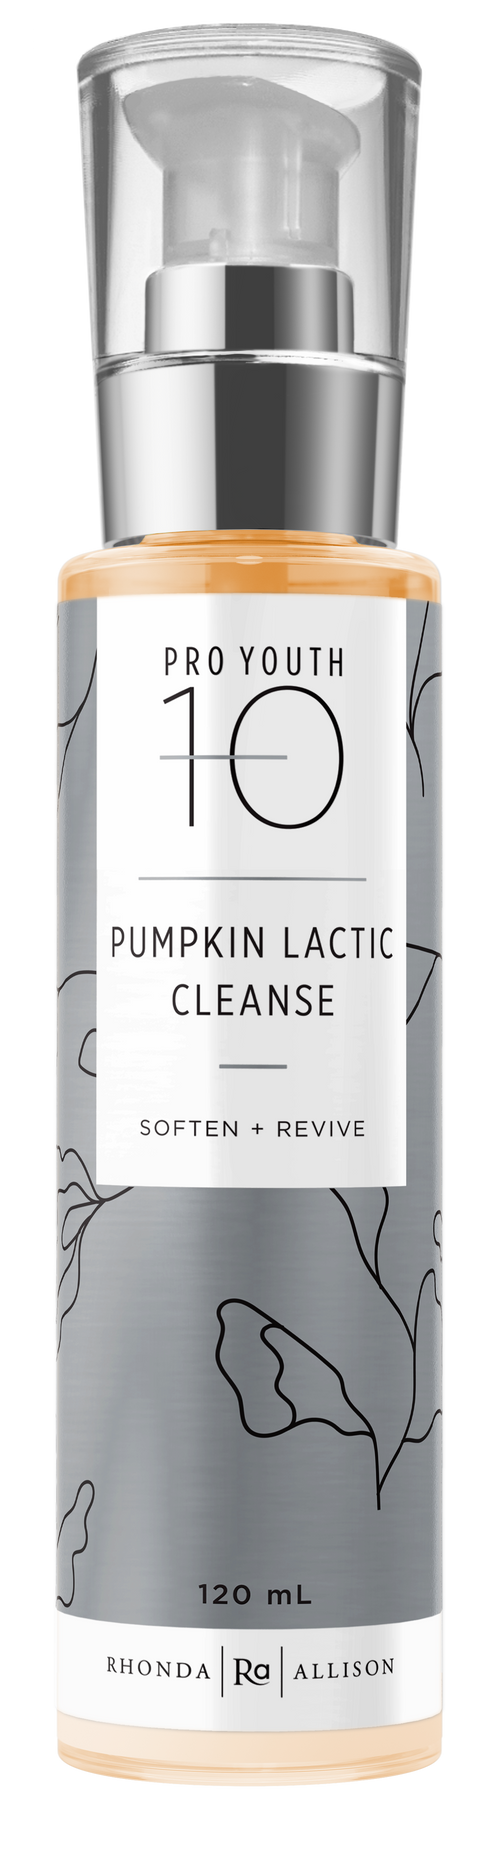 4 oz Pumpkin Lactic Cleanse